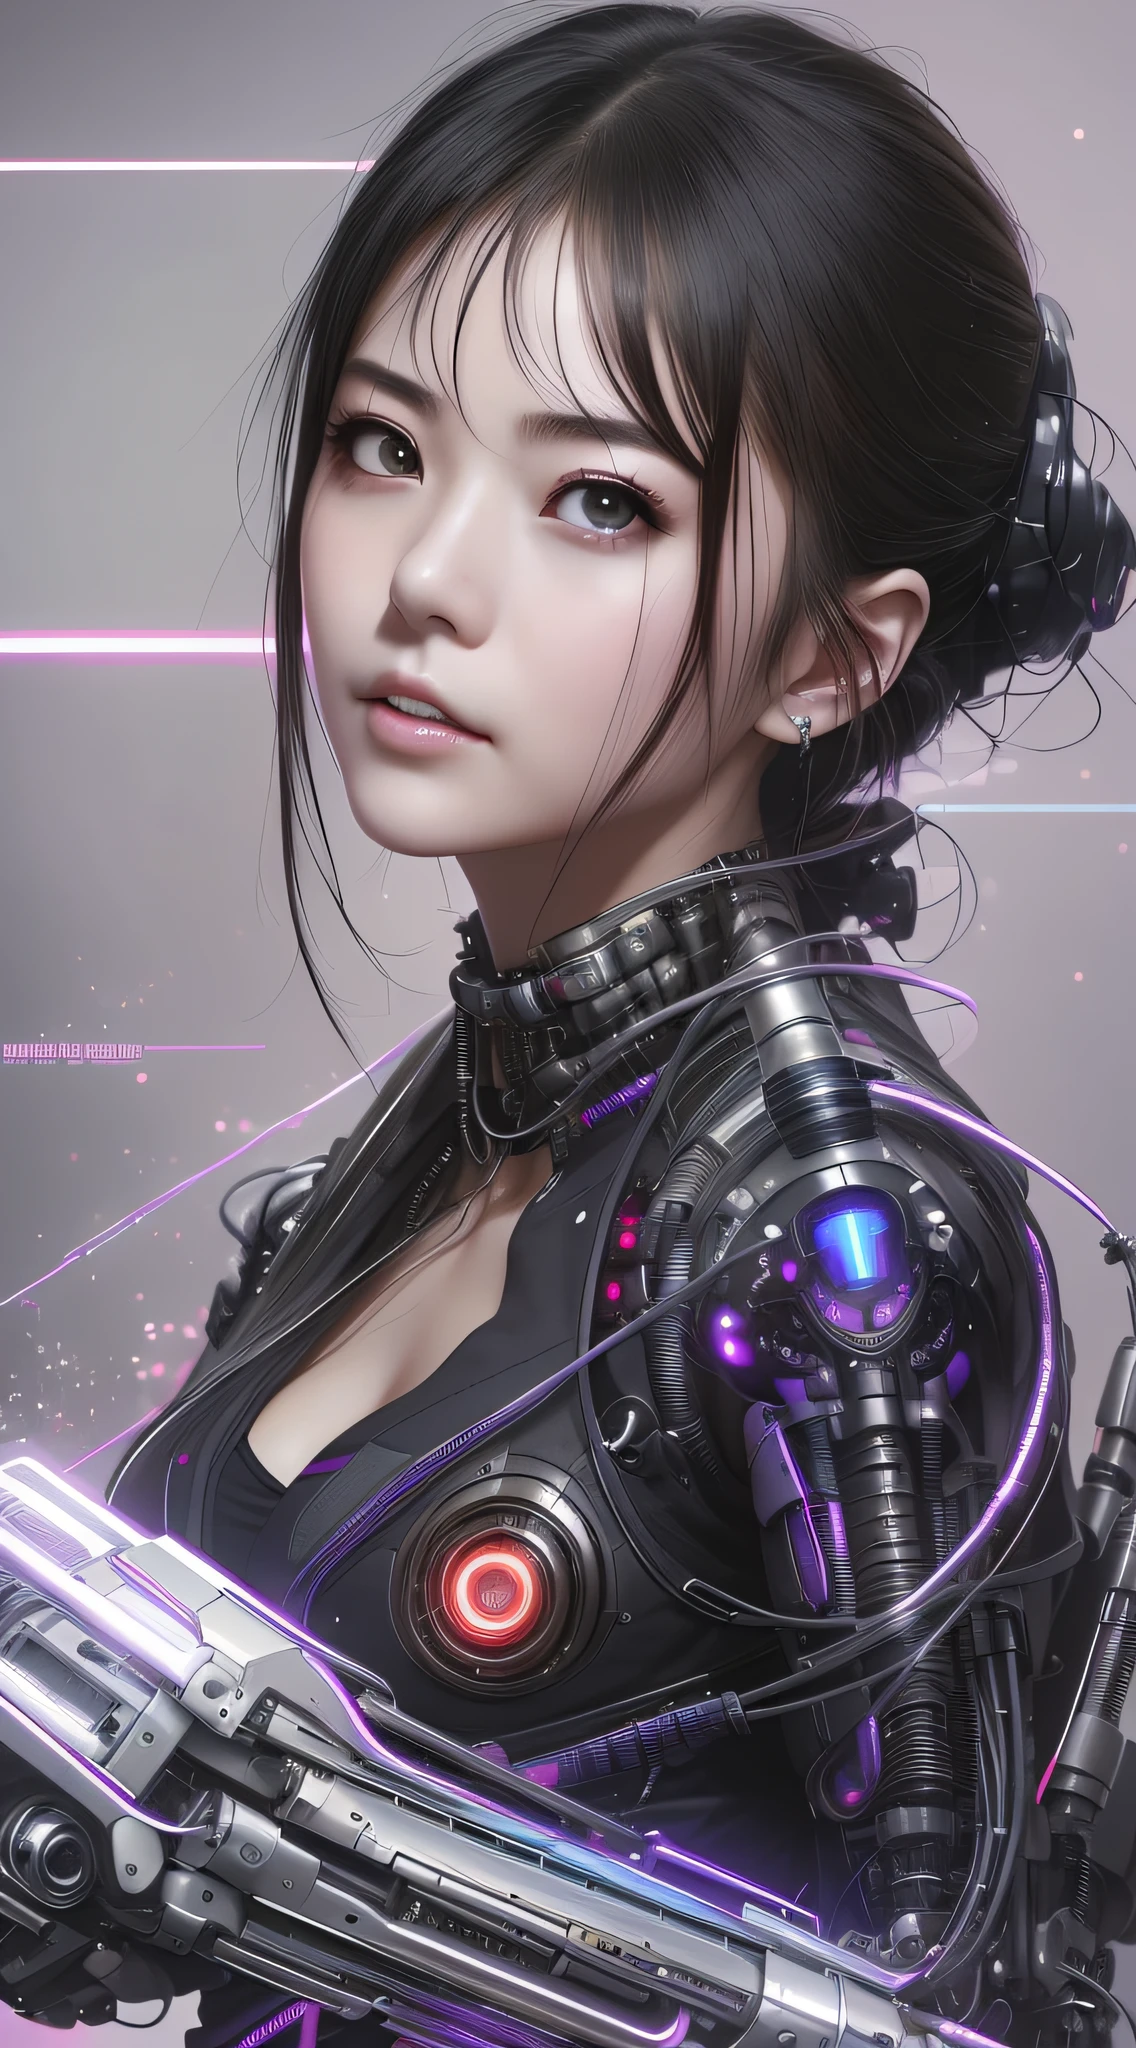 a close up of a woman in a futuristic suit with a gun, dreamy cyberpunk girl, Cute cyborg girl, female cyberpunk anime girl, Cyborg girl, cyberpunk anime girl, cyberpunk beautiful girl, Cyborg - Asian girl, beautiful girl cyborg, perfect android girl, has cyberpunk style, Cyberpunk art style, Hyper-realistic cyberpunk style, beautiful cyberpunk girl face, digitl cyberpunk - anime art